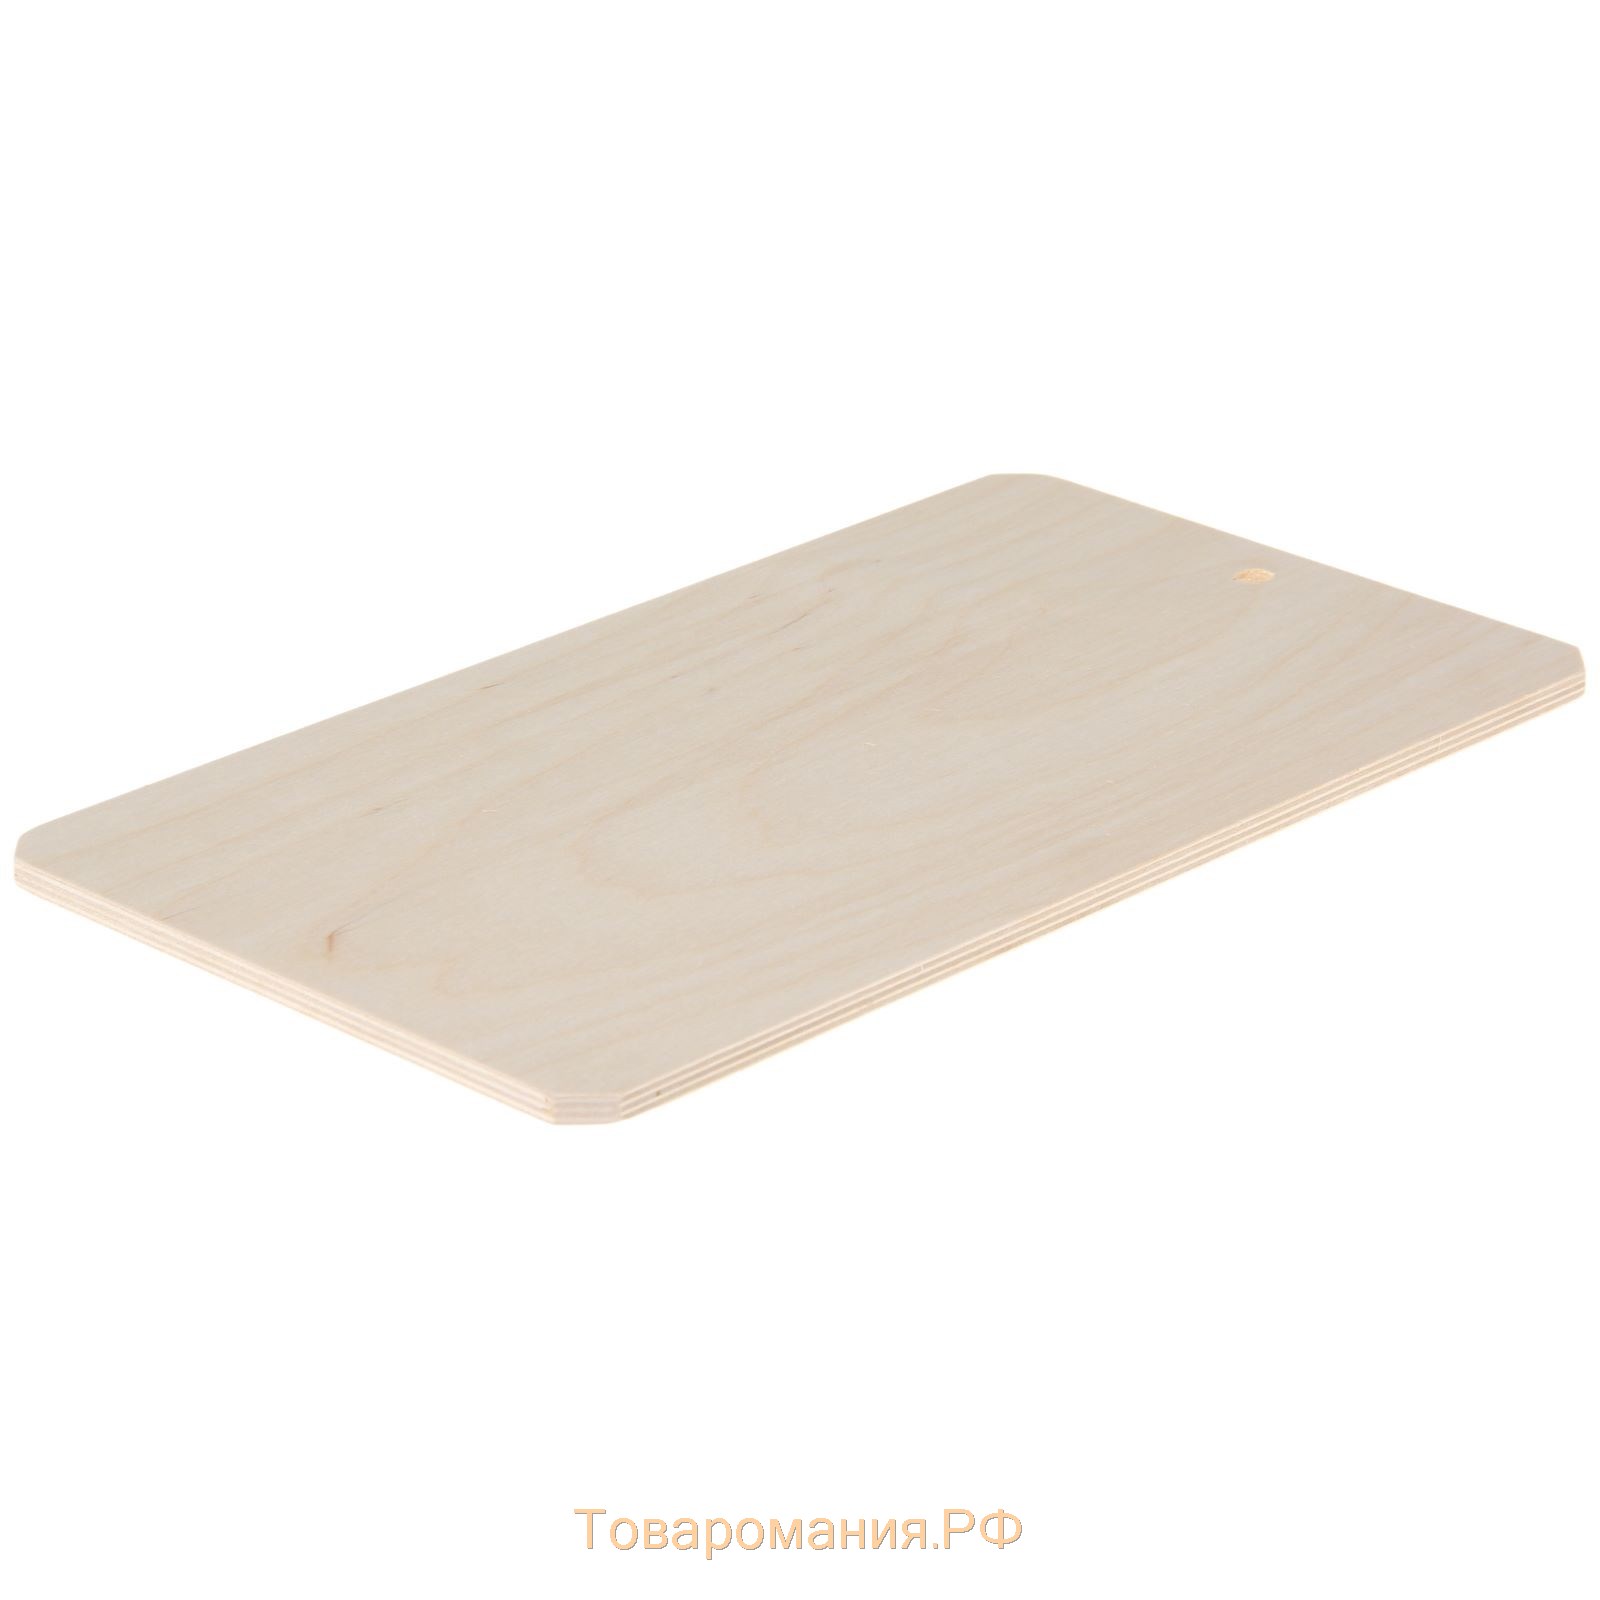 Доска разделочная деревянная, 37,5×21 см